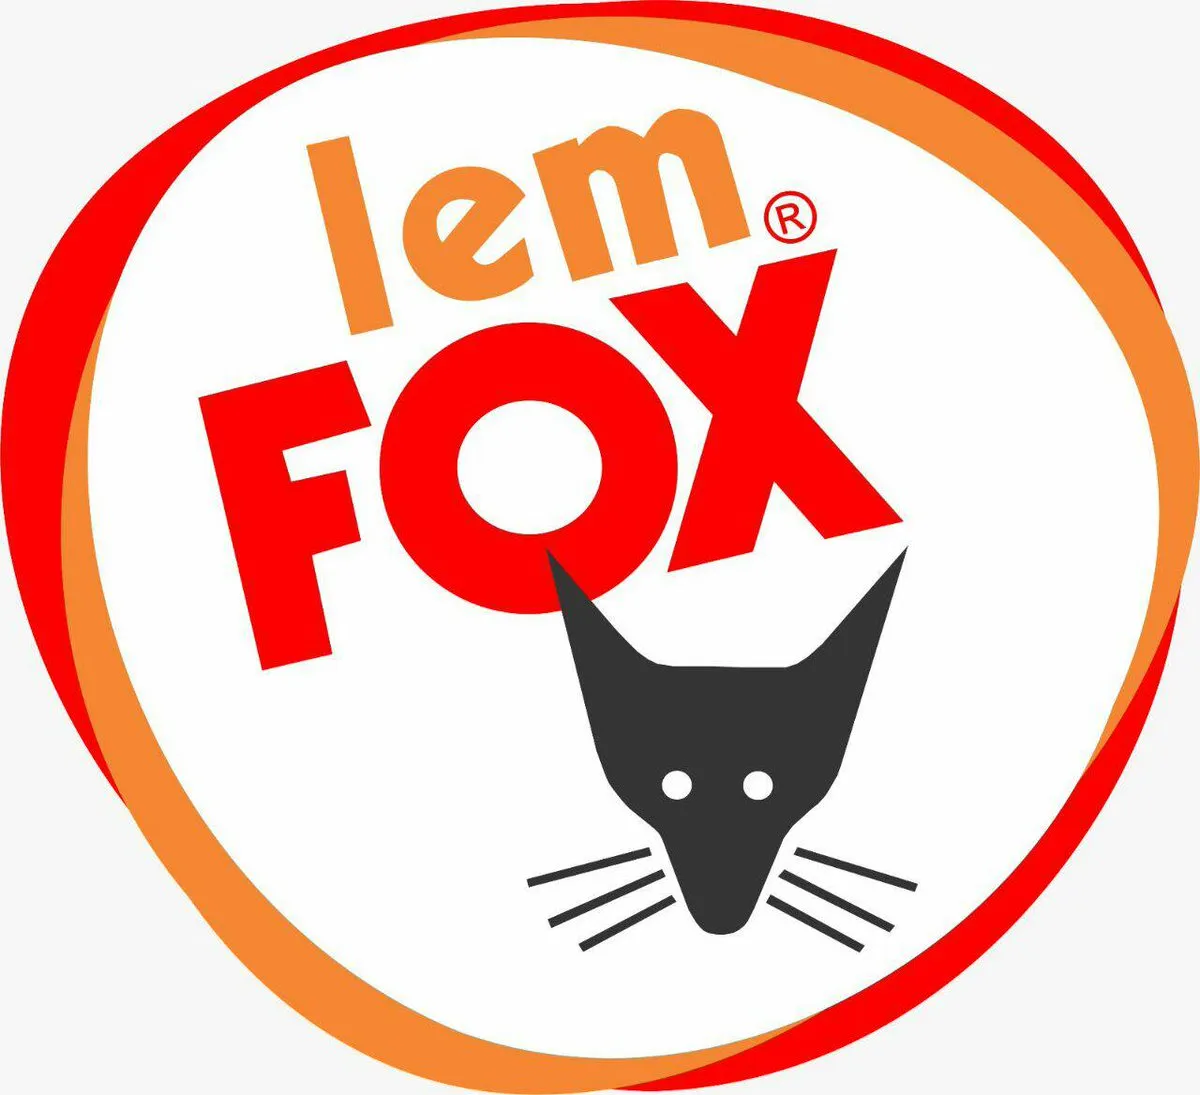 Lem Fox